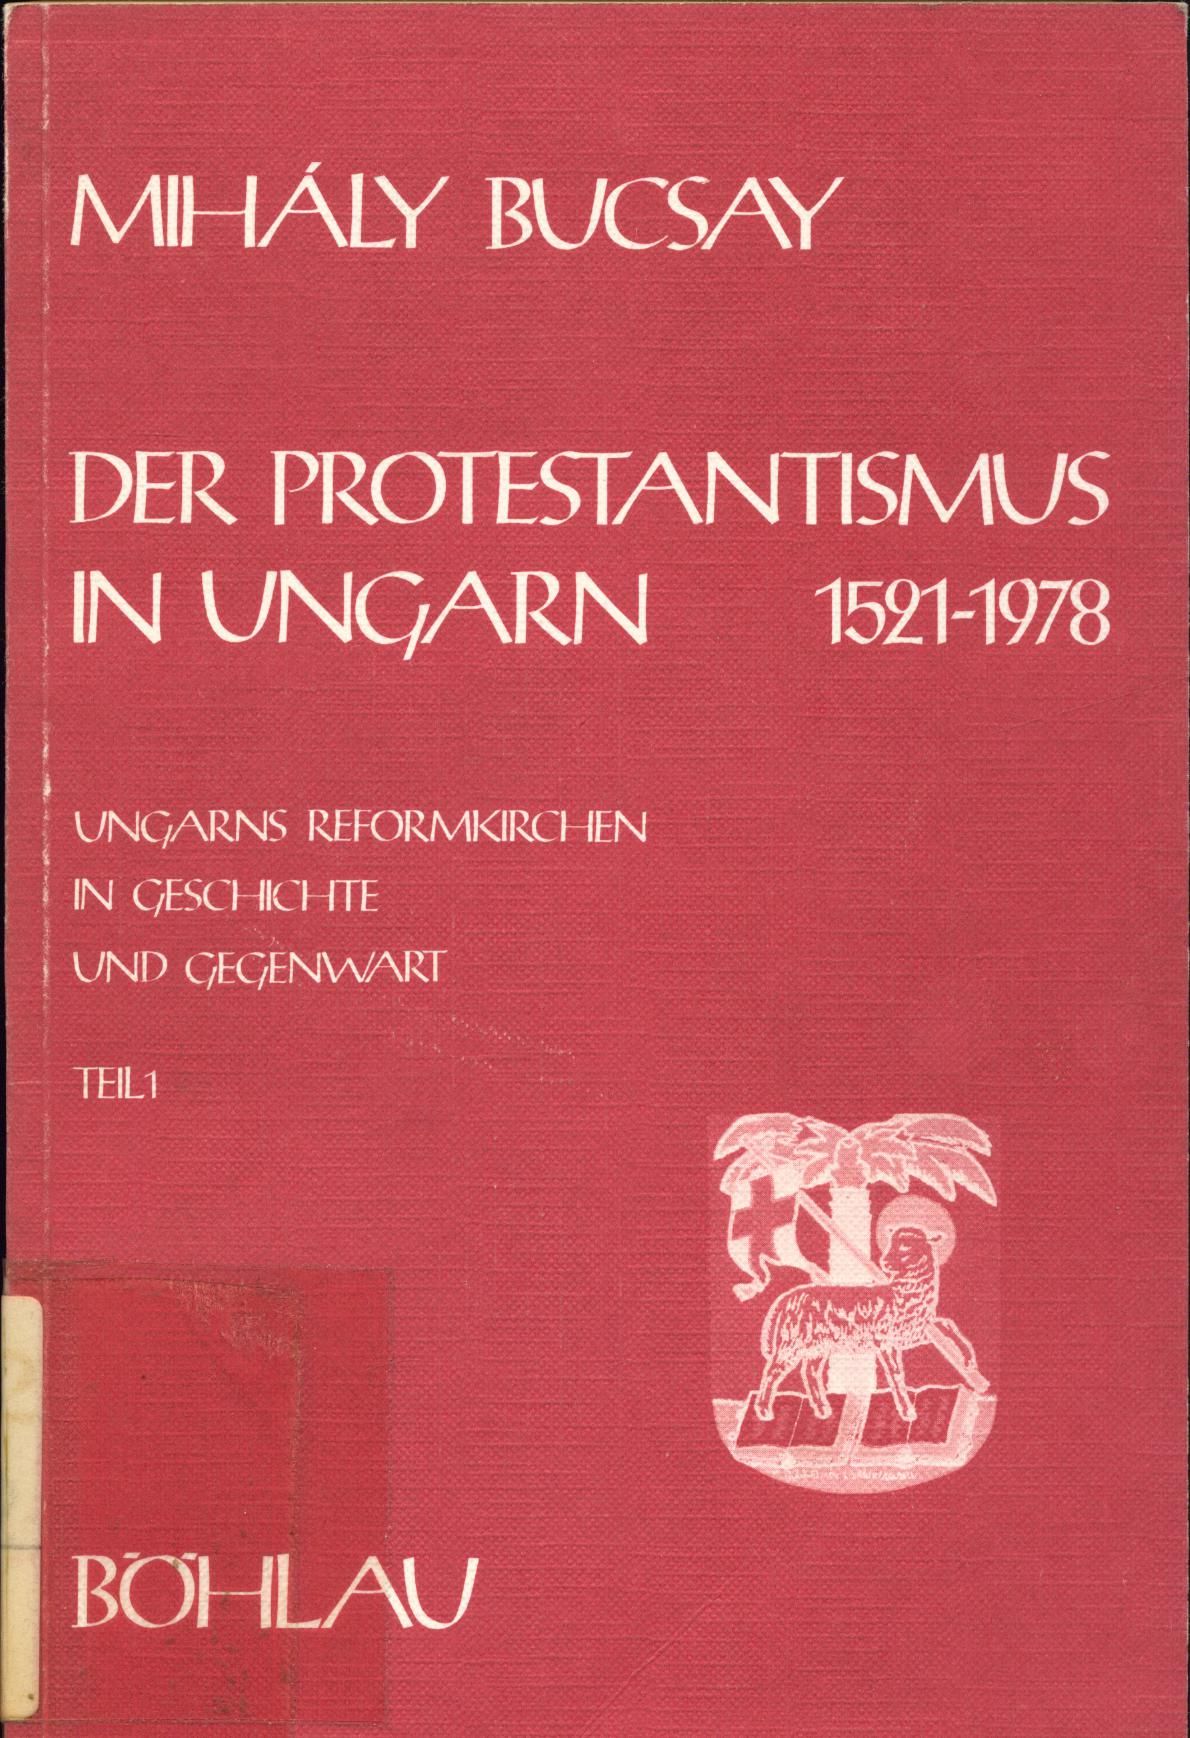 Der Protestantismus in Ungarn 1521-1978 Ungarns Reformationskirchen in Geschichte und Gegenwart - Bucsay, Mihaly